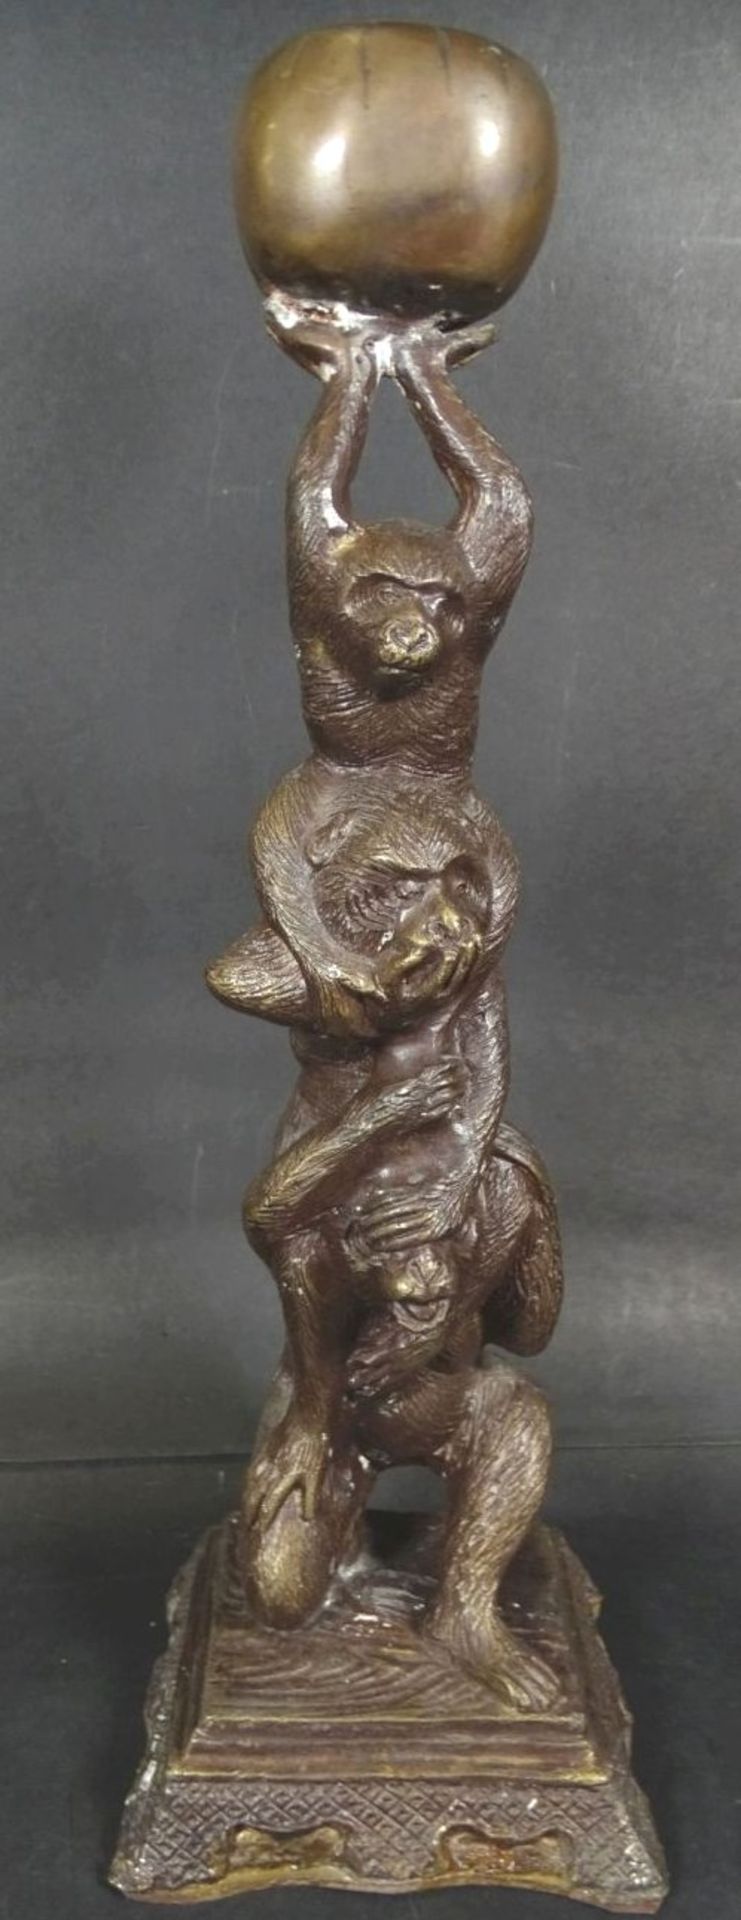 Bronze "Drei Affen mit Ball", H-33 cm, 10x10 cm- - -22.61 % buyer's premium on the hammer priceVAT